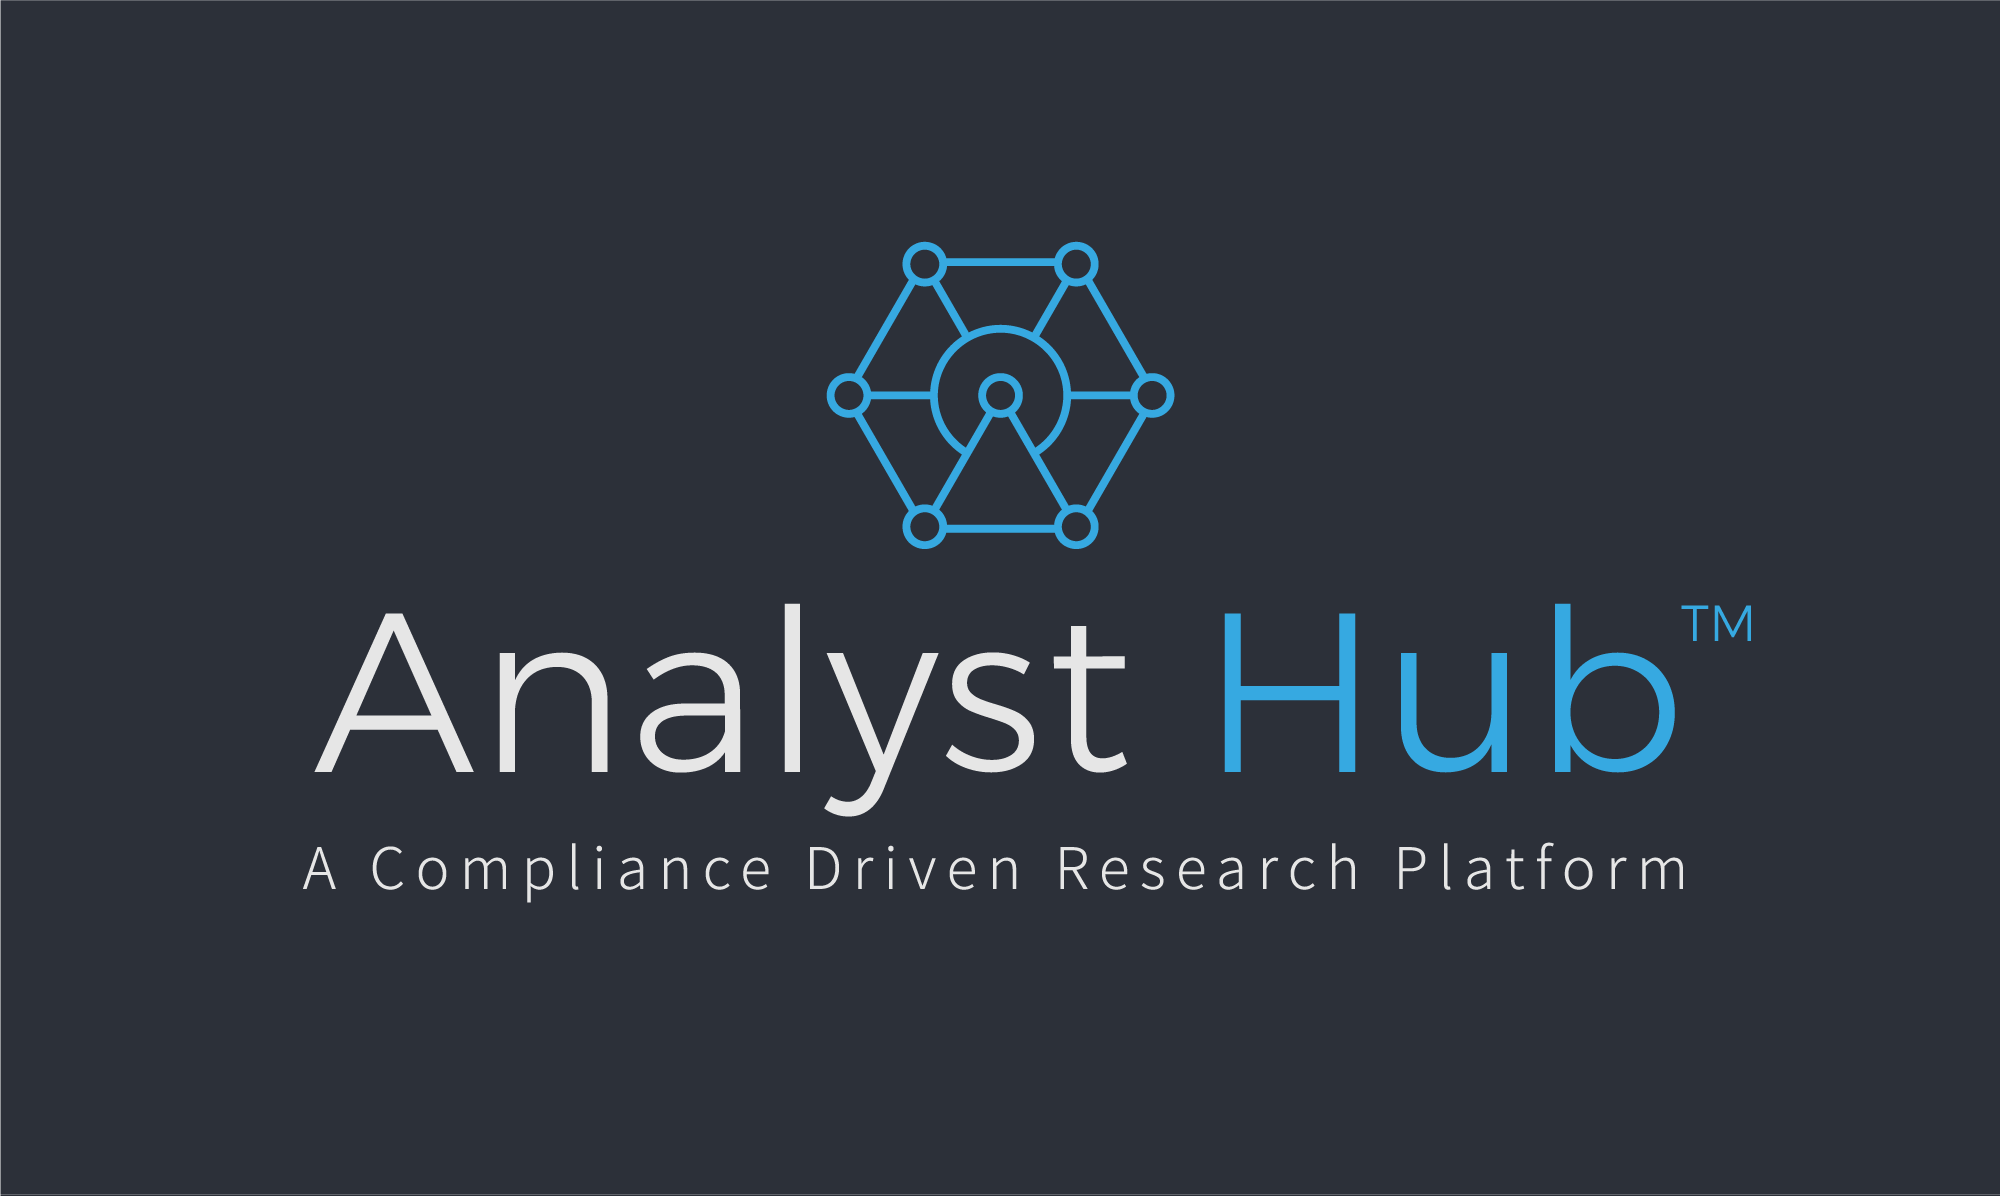 analyst hub logo on dark background